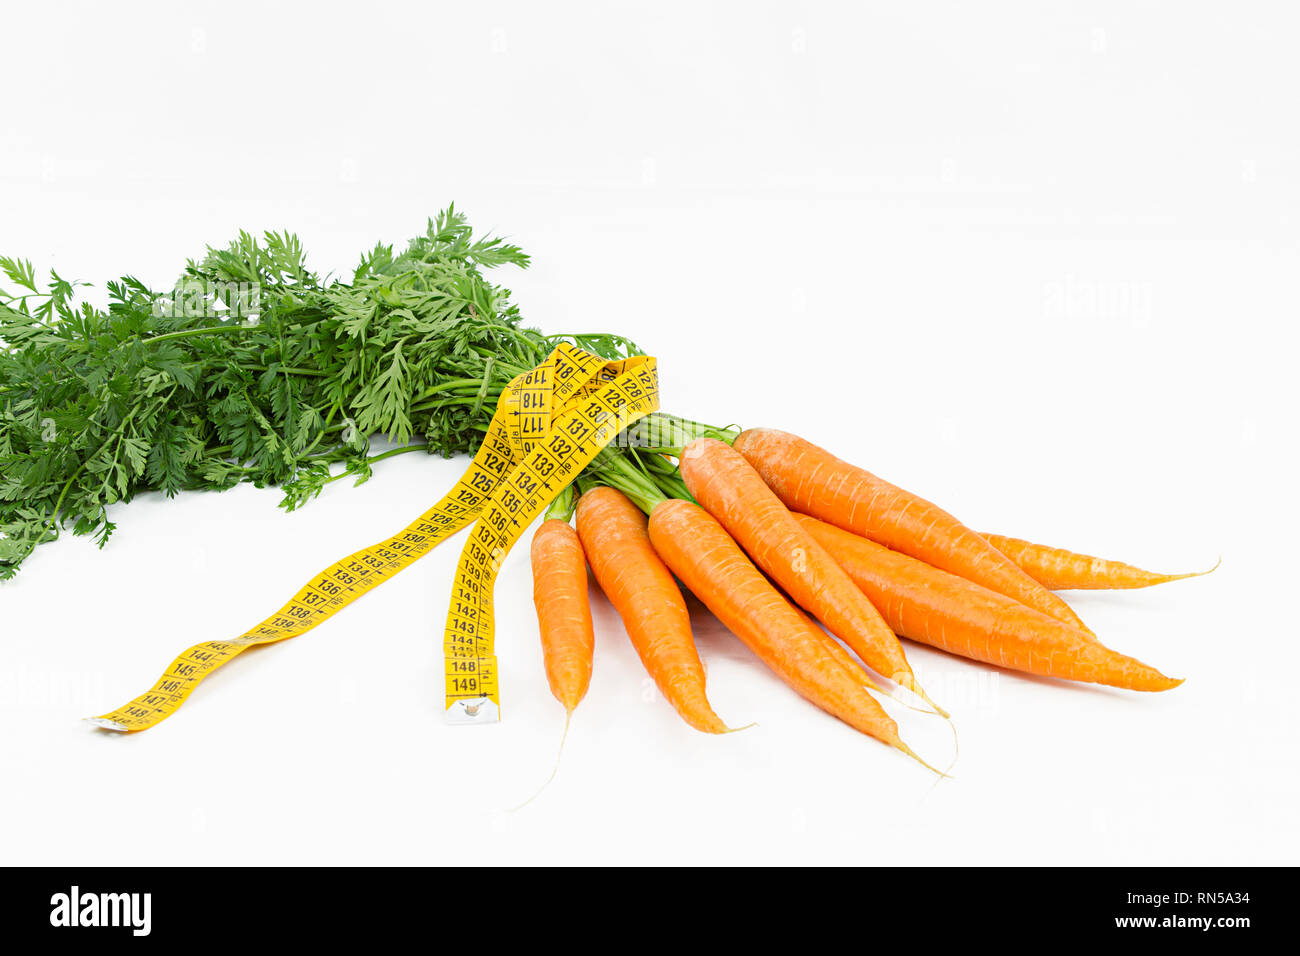 Vegetarische Ernährung, Gewicht zu reduzieren. Ein Haufen frisch gepflückte Karotten in einem Körper Maßband Herrscher, die Bordkante symbolisiert gewickelt Stockfoto